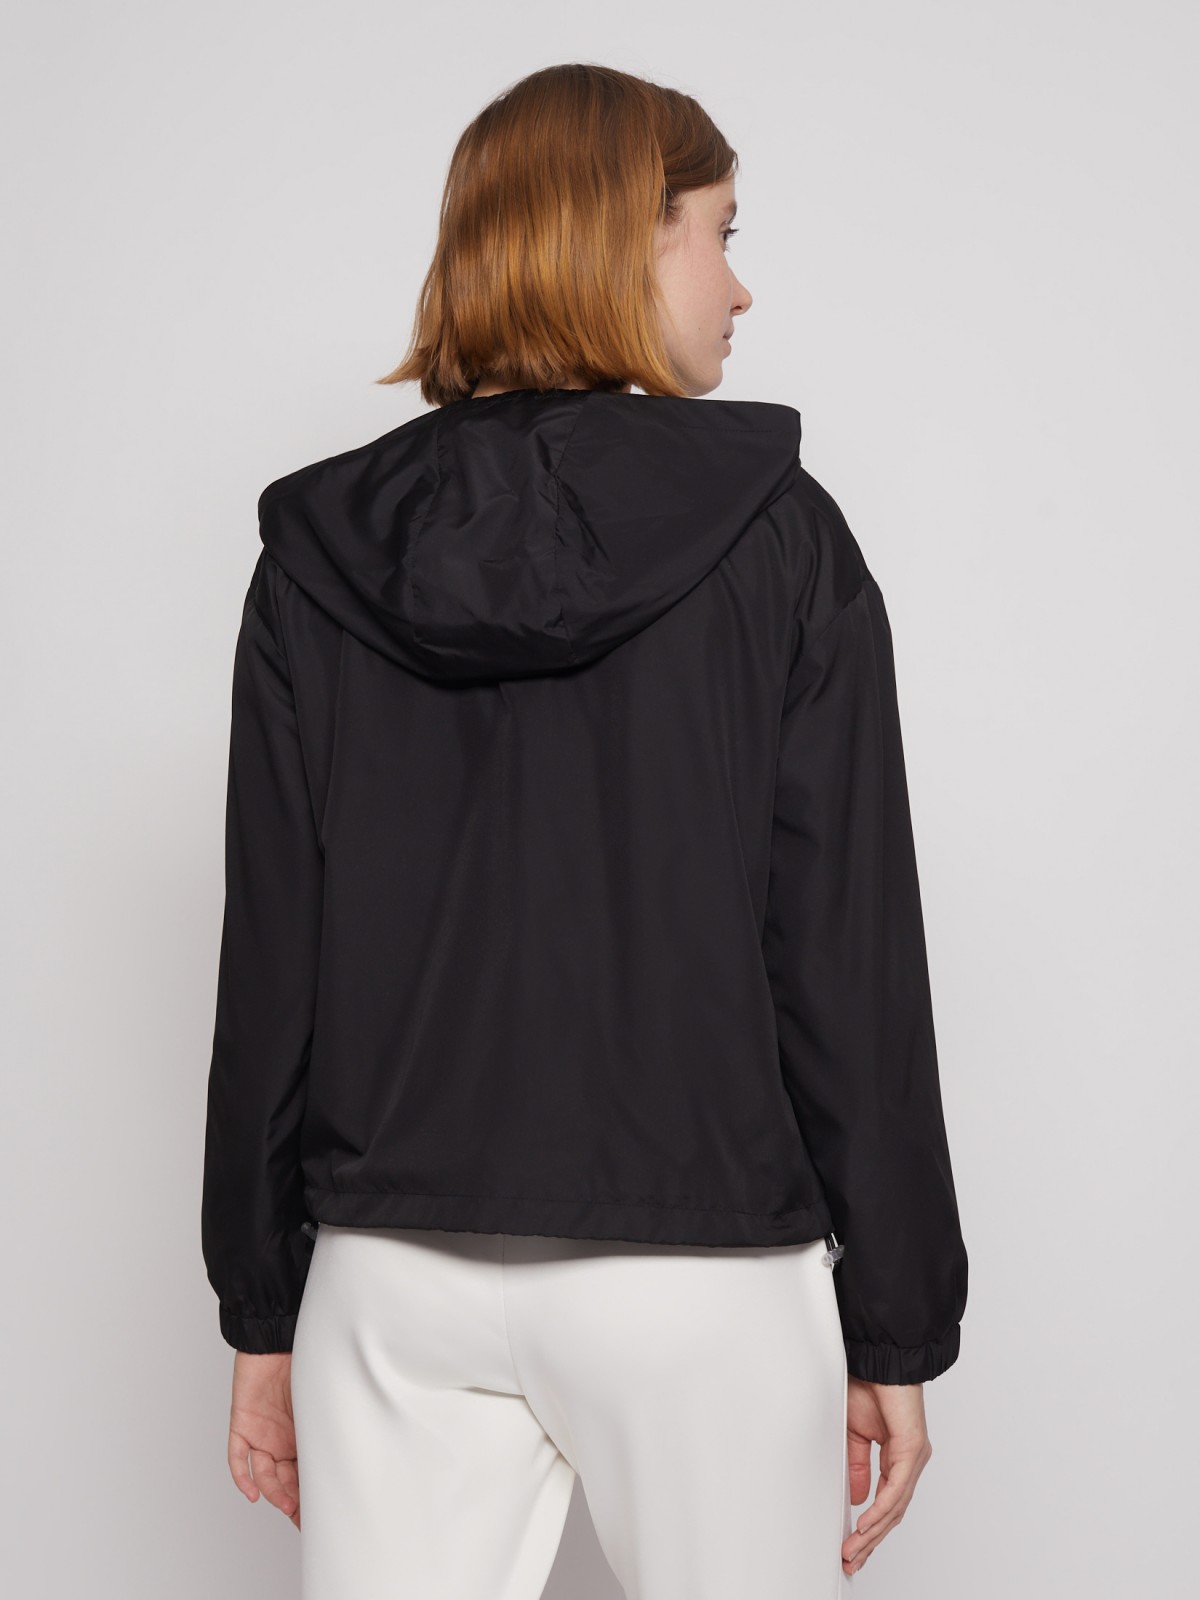 Куртка-ветровка с капюшоном zolla 022215602024, цвет черный, размер XS - фото 6